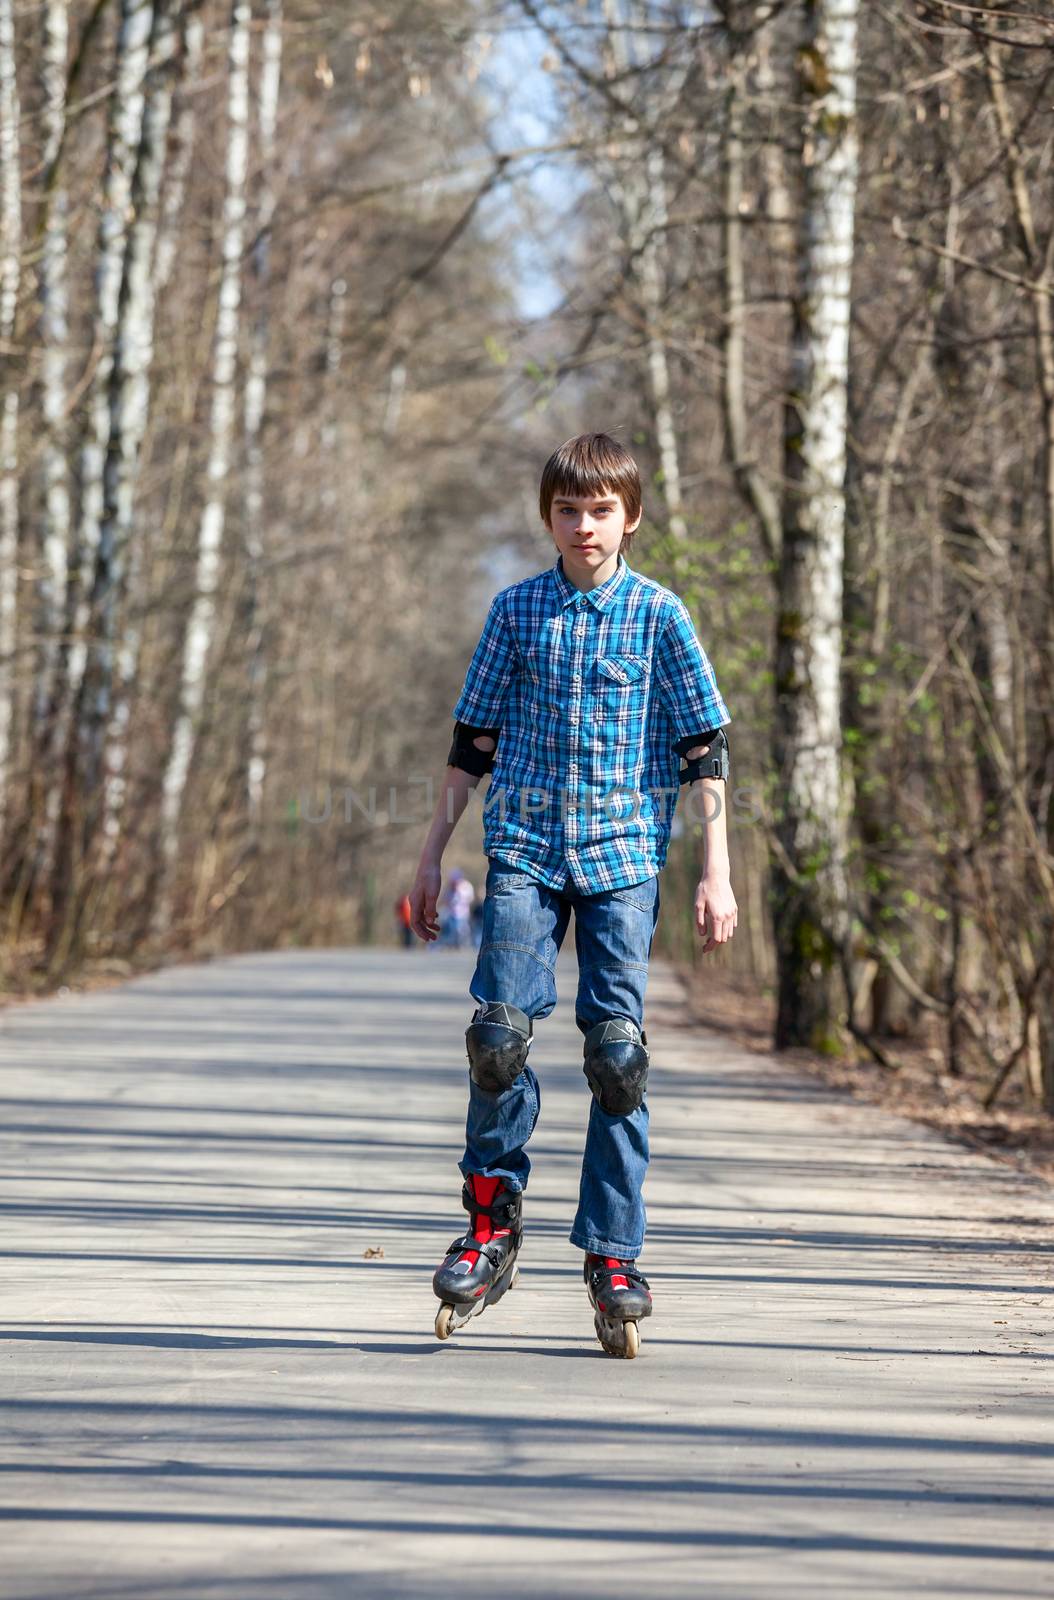 Kid skating on rollerblades in spring park